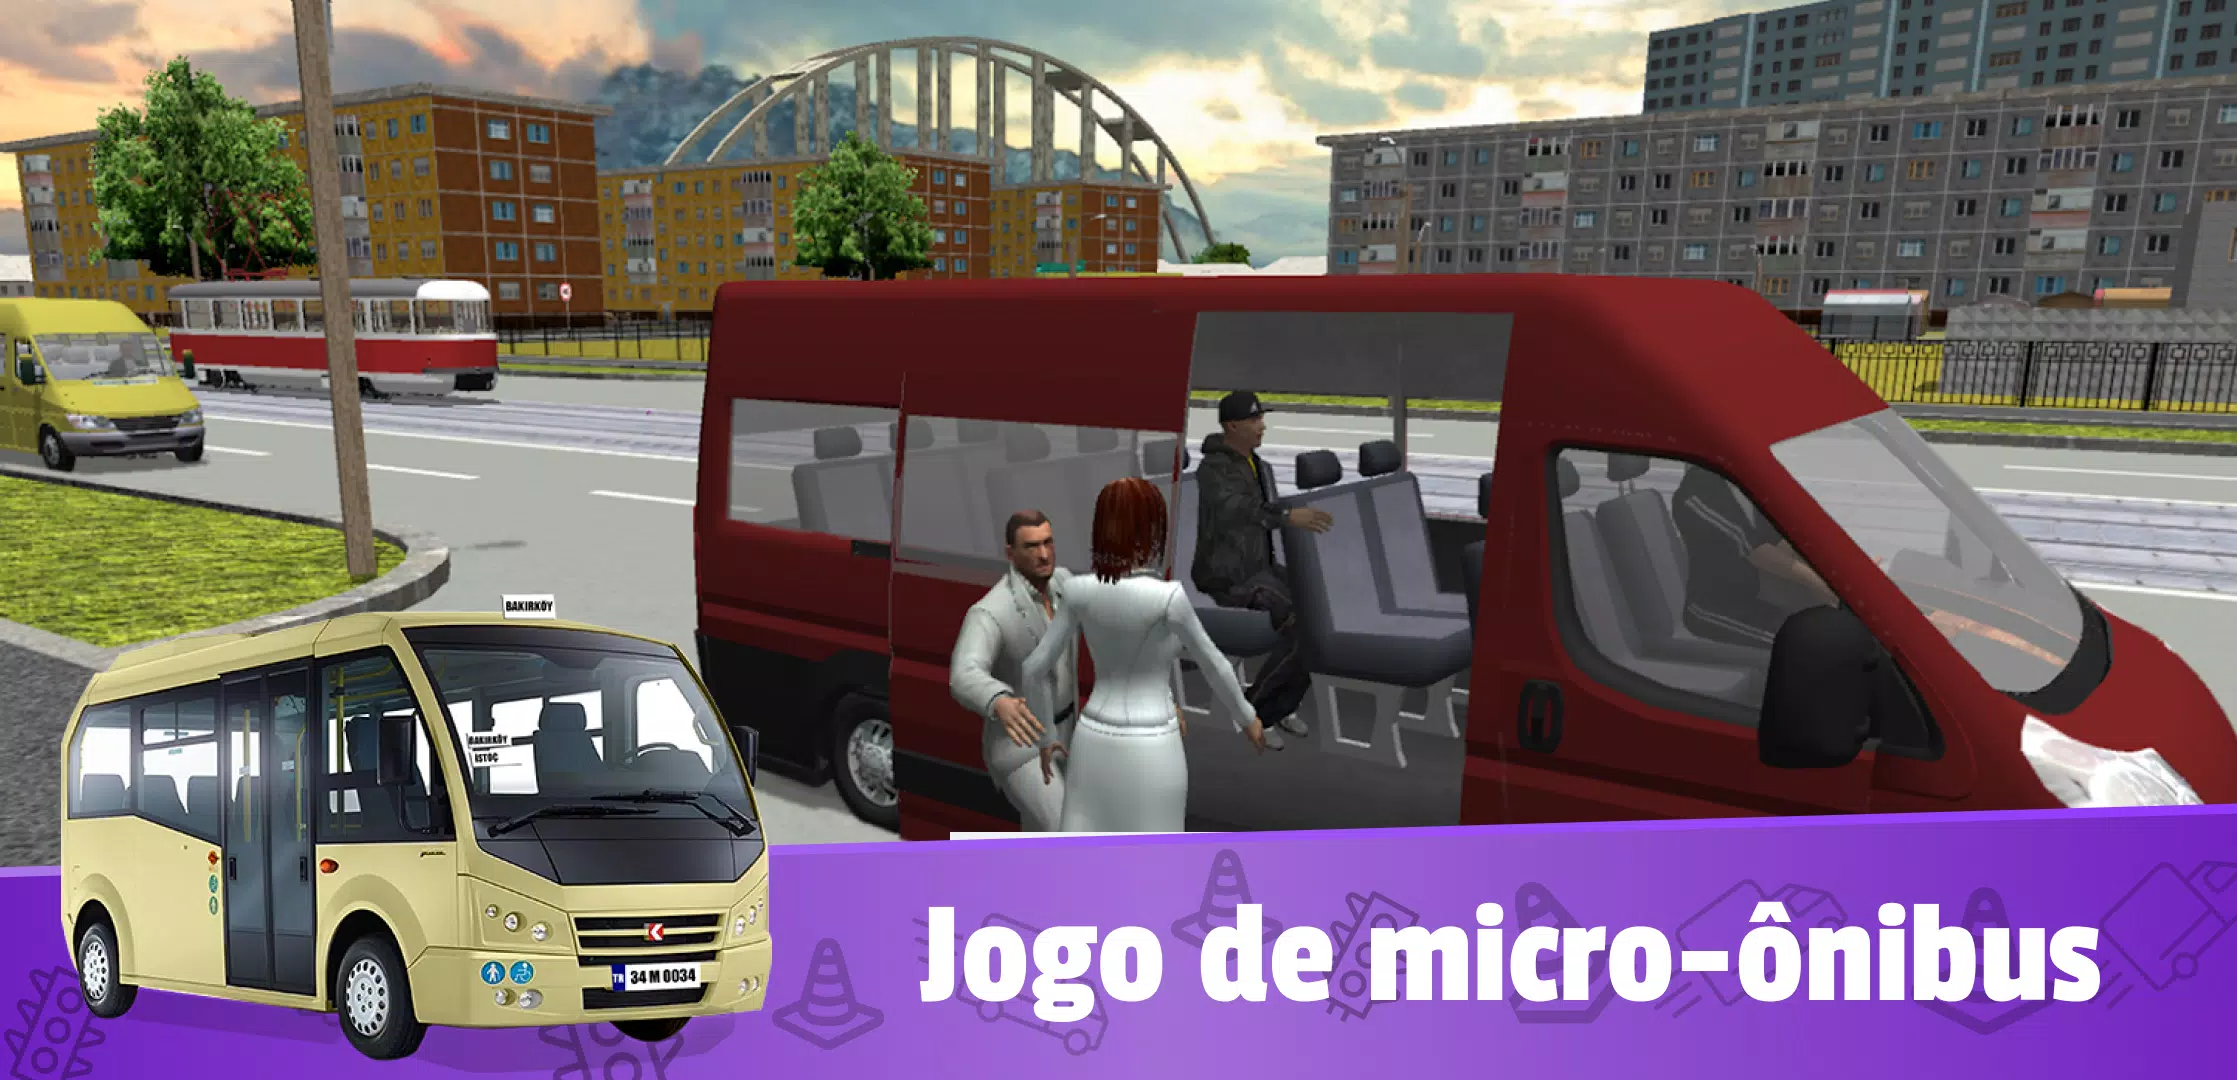 Atualização World Bus Driving Simulator - Micro ônibus no Jogo